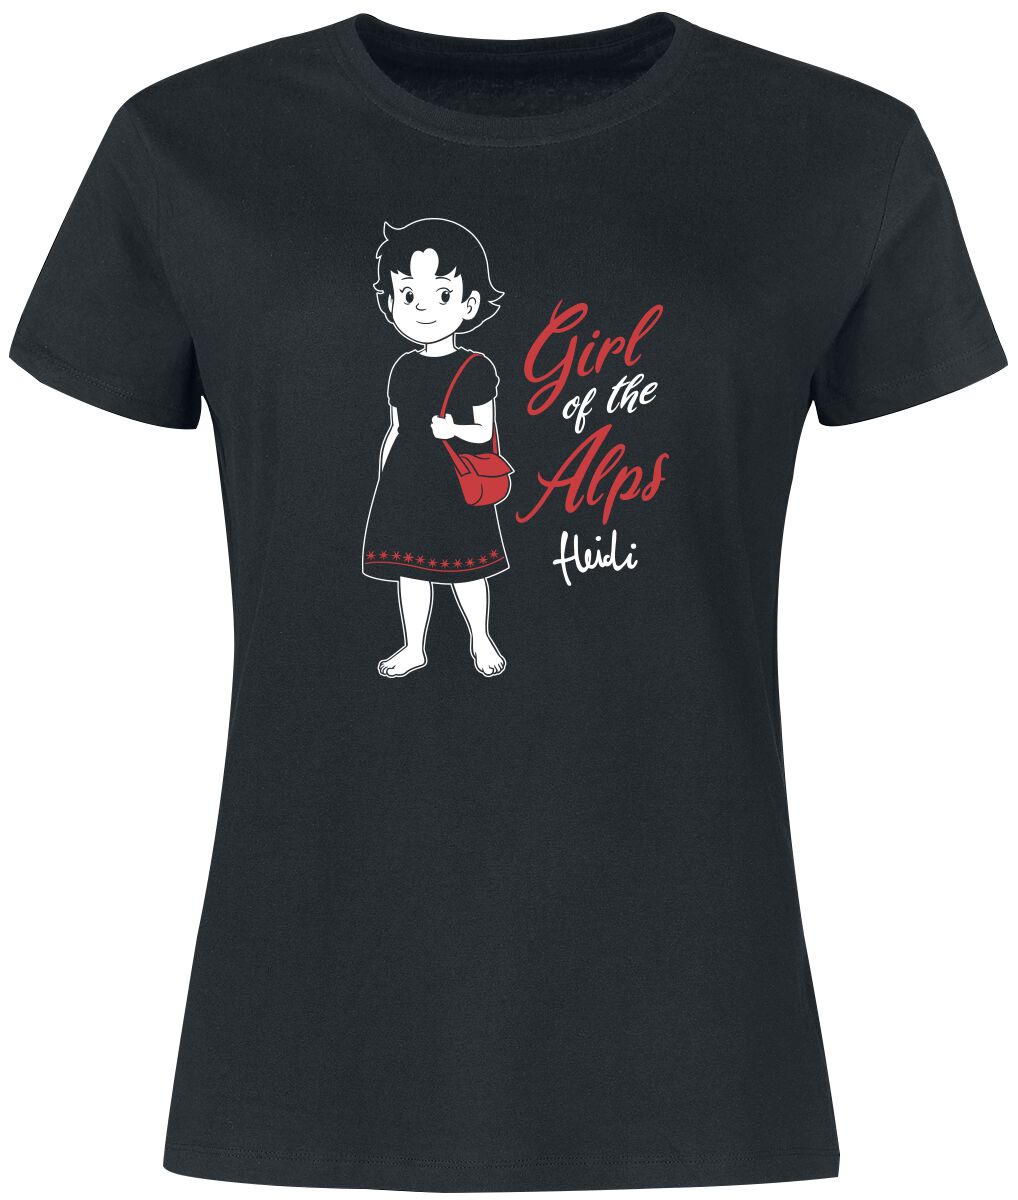 T-Shirt Manches courtes de Heidi - Girl Of The Alps - S à 3XL - pour Femme - noir